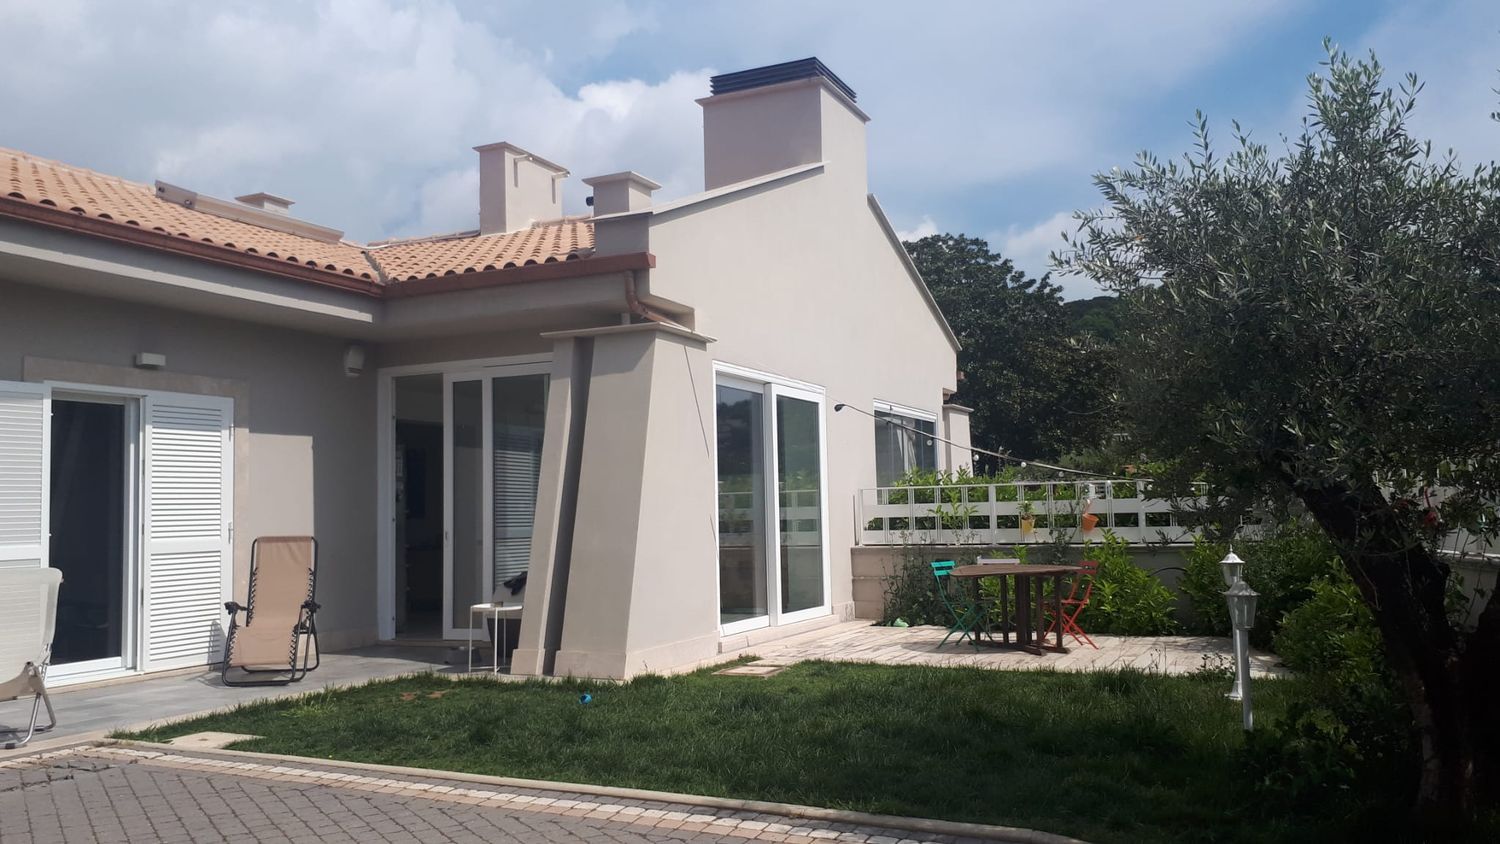 Villa Bifamiliare in vendita a Albano Laziale, 4 locali, prezzo € 379.000 | CambioCasa.it